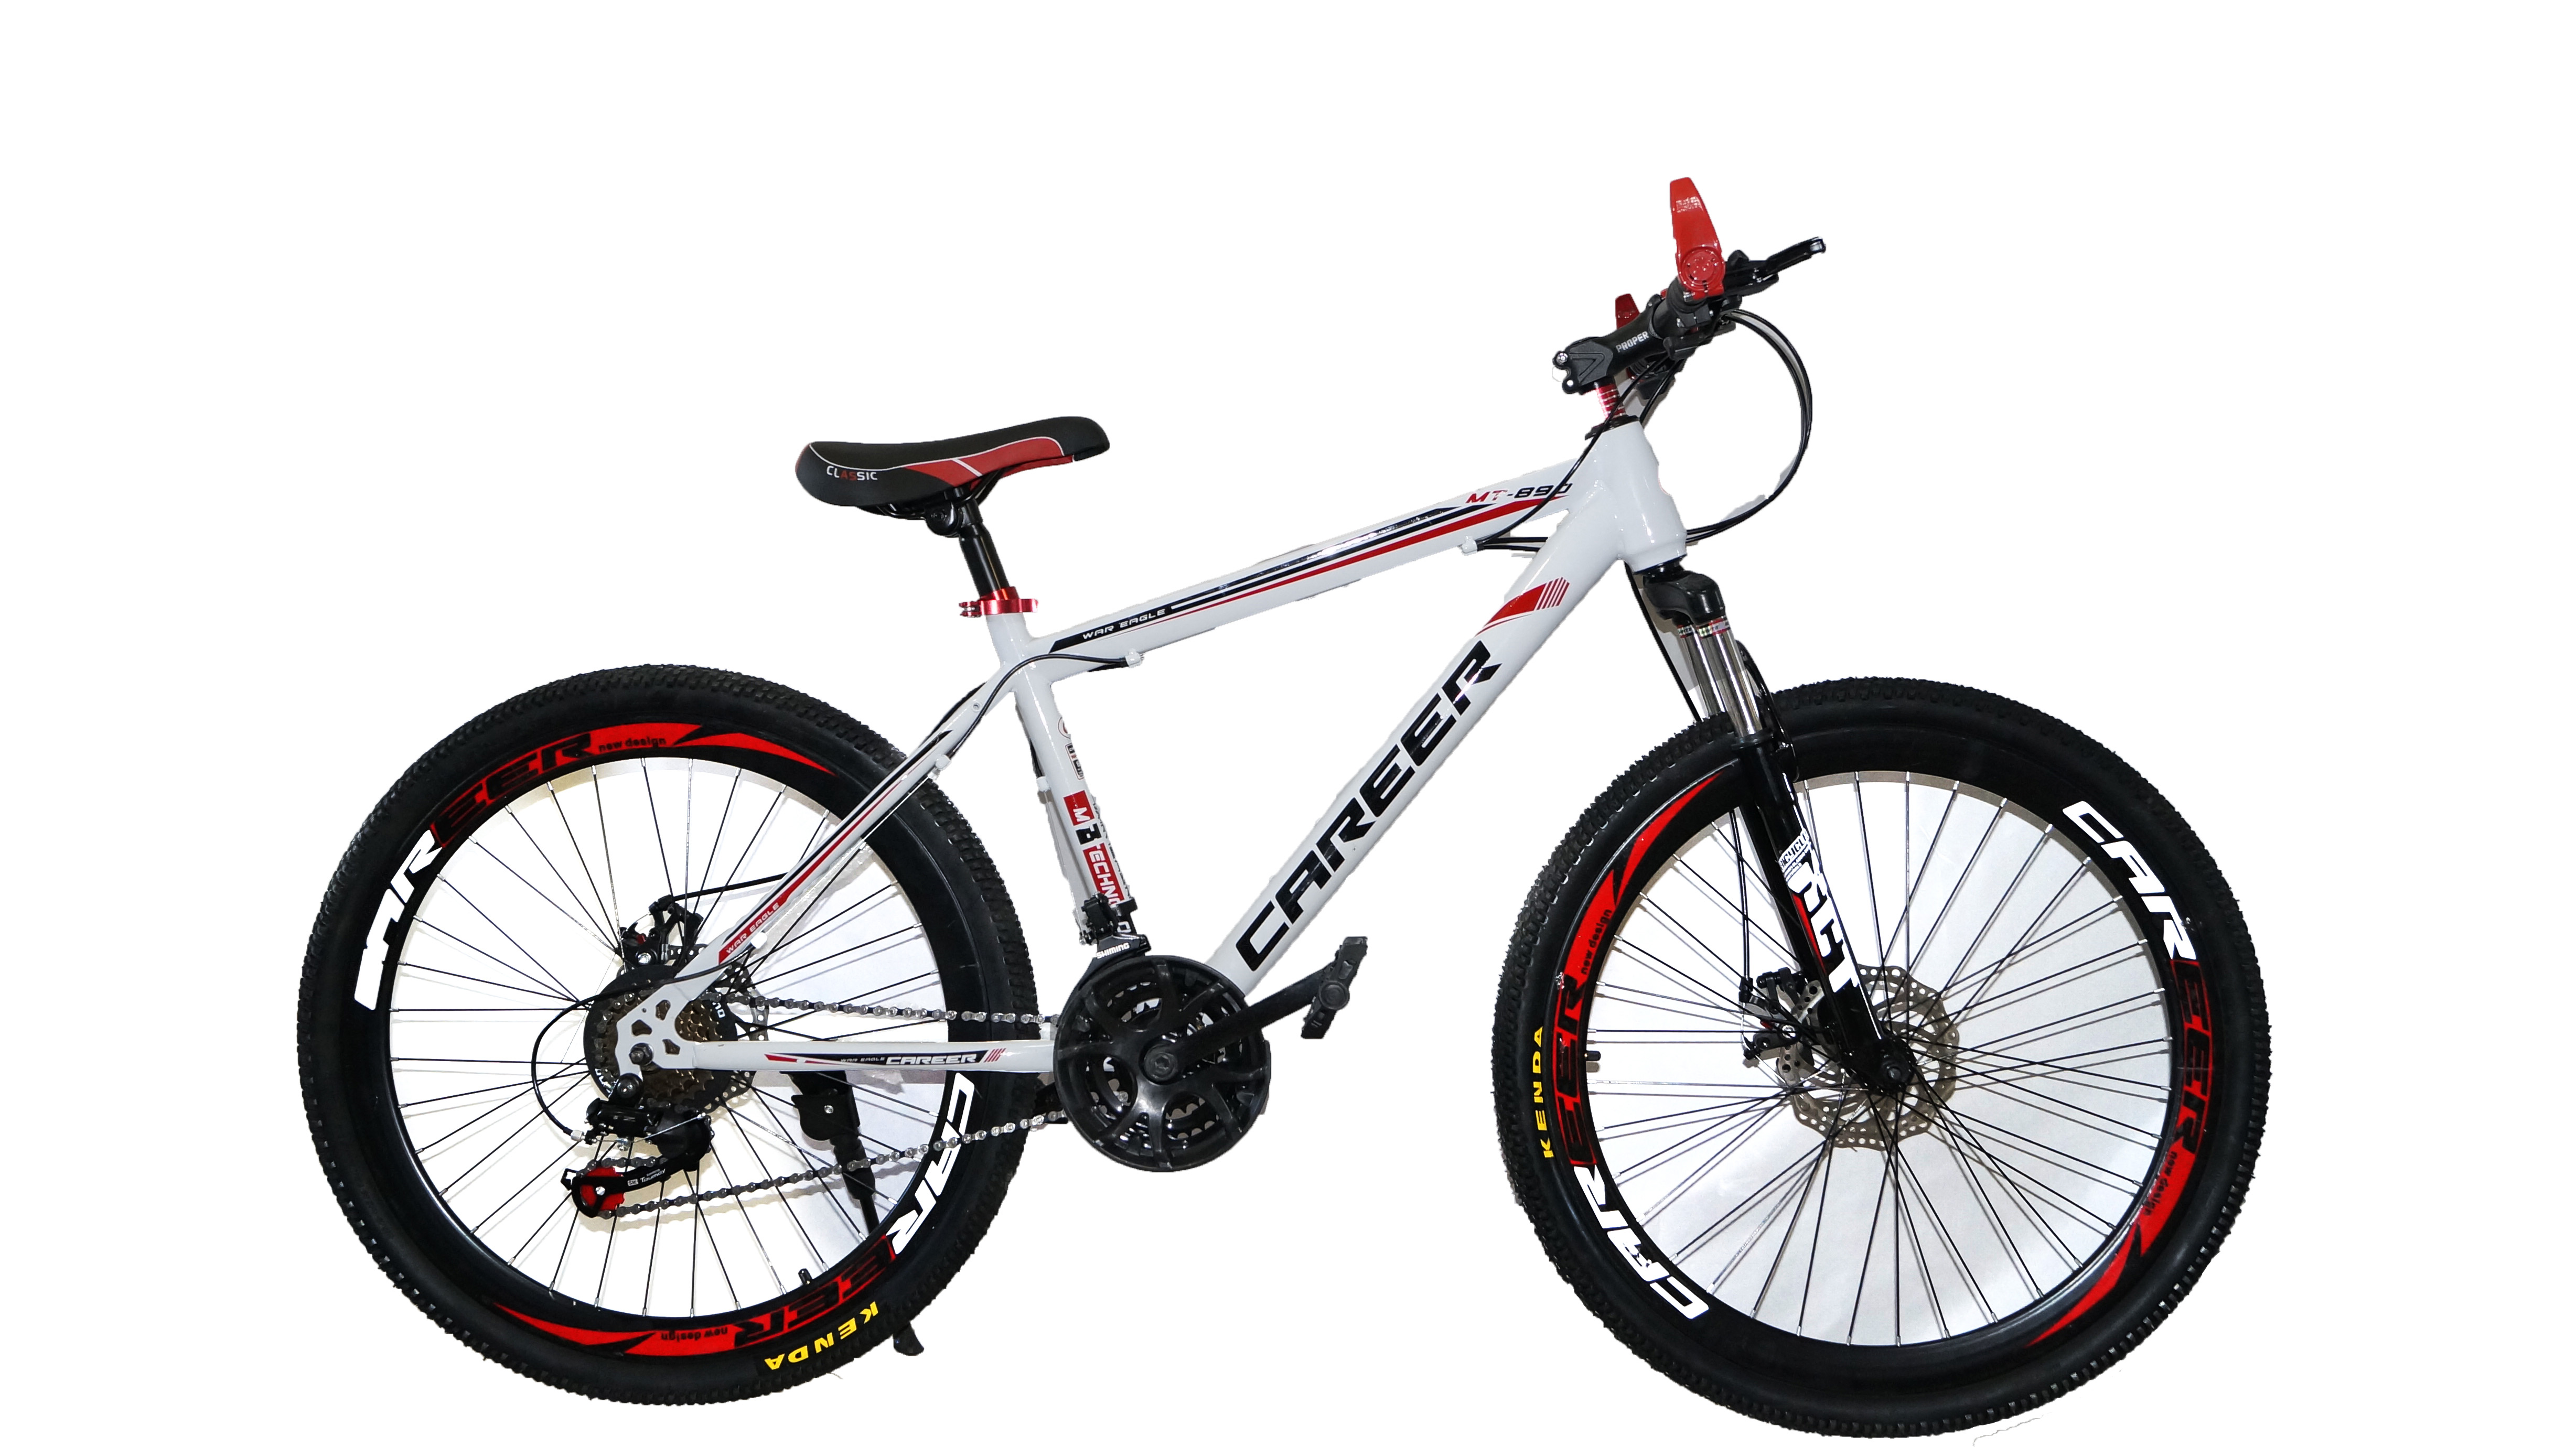 Авито велосипед горный взрослый. Велосипед Energy e01, 26 дюймов, 21 скорость, (черно-красный). Велосипед Dream c680. Велосипед career c680 характеристики. Велосипед Drive Dr-797.